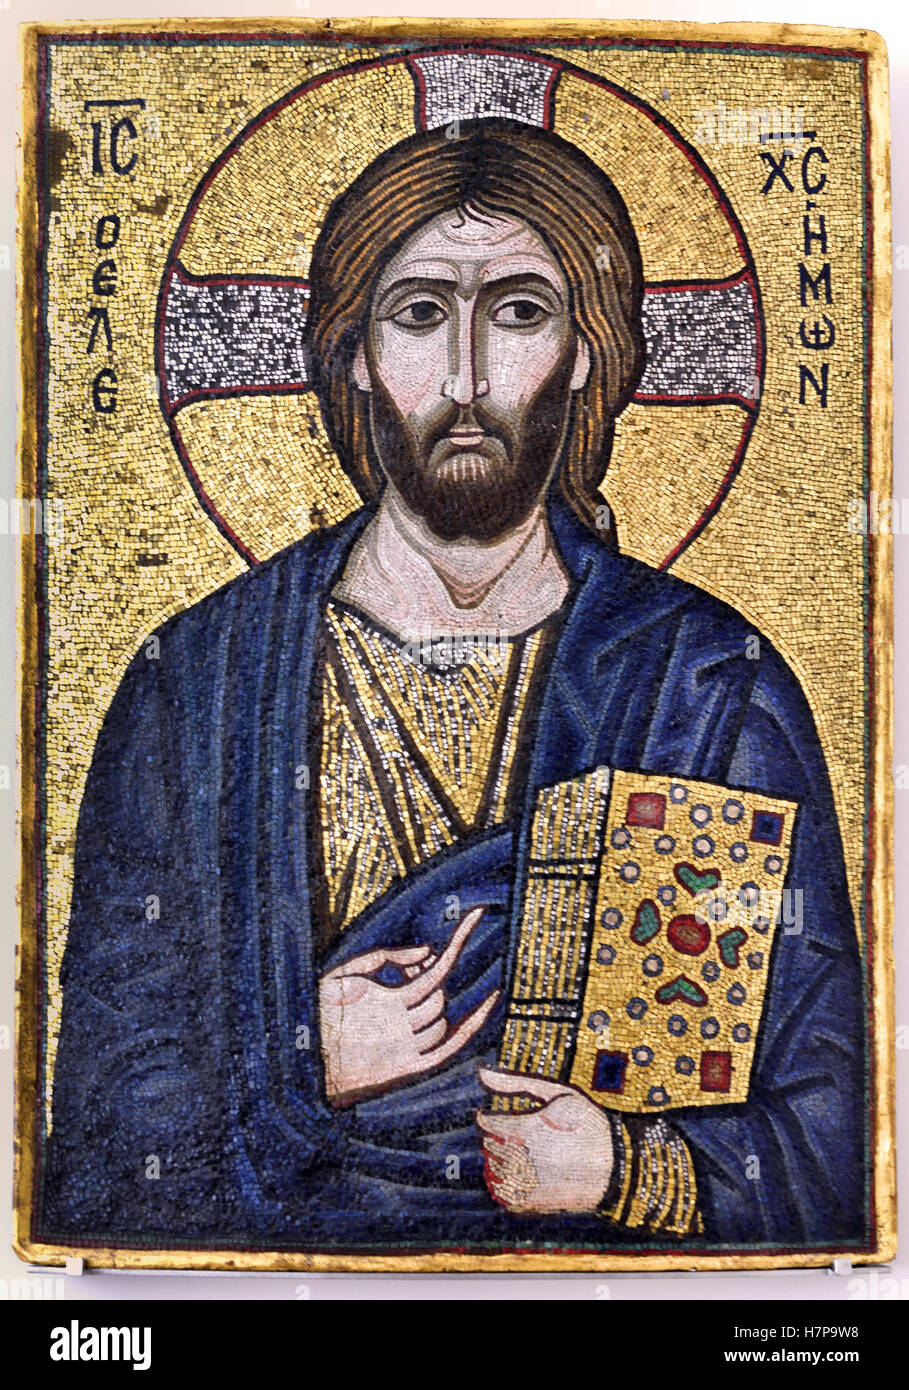 Cristo misericordioso icona mosaico del XII secolo Costantinopoli Istanbul Turchia turco romano Est ( mosaico di vetro e pietre naturali nel letto di cera su pannello di legno ) Foto Stock